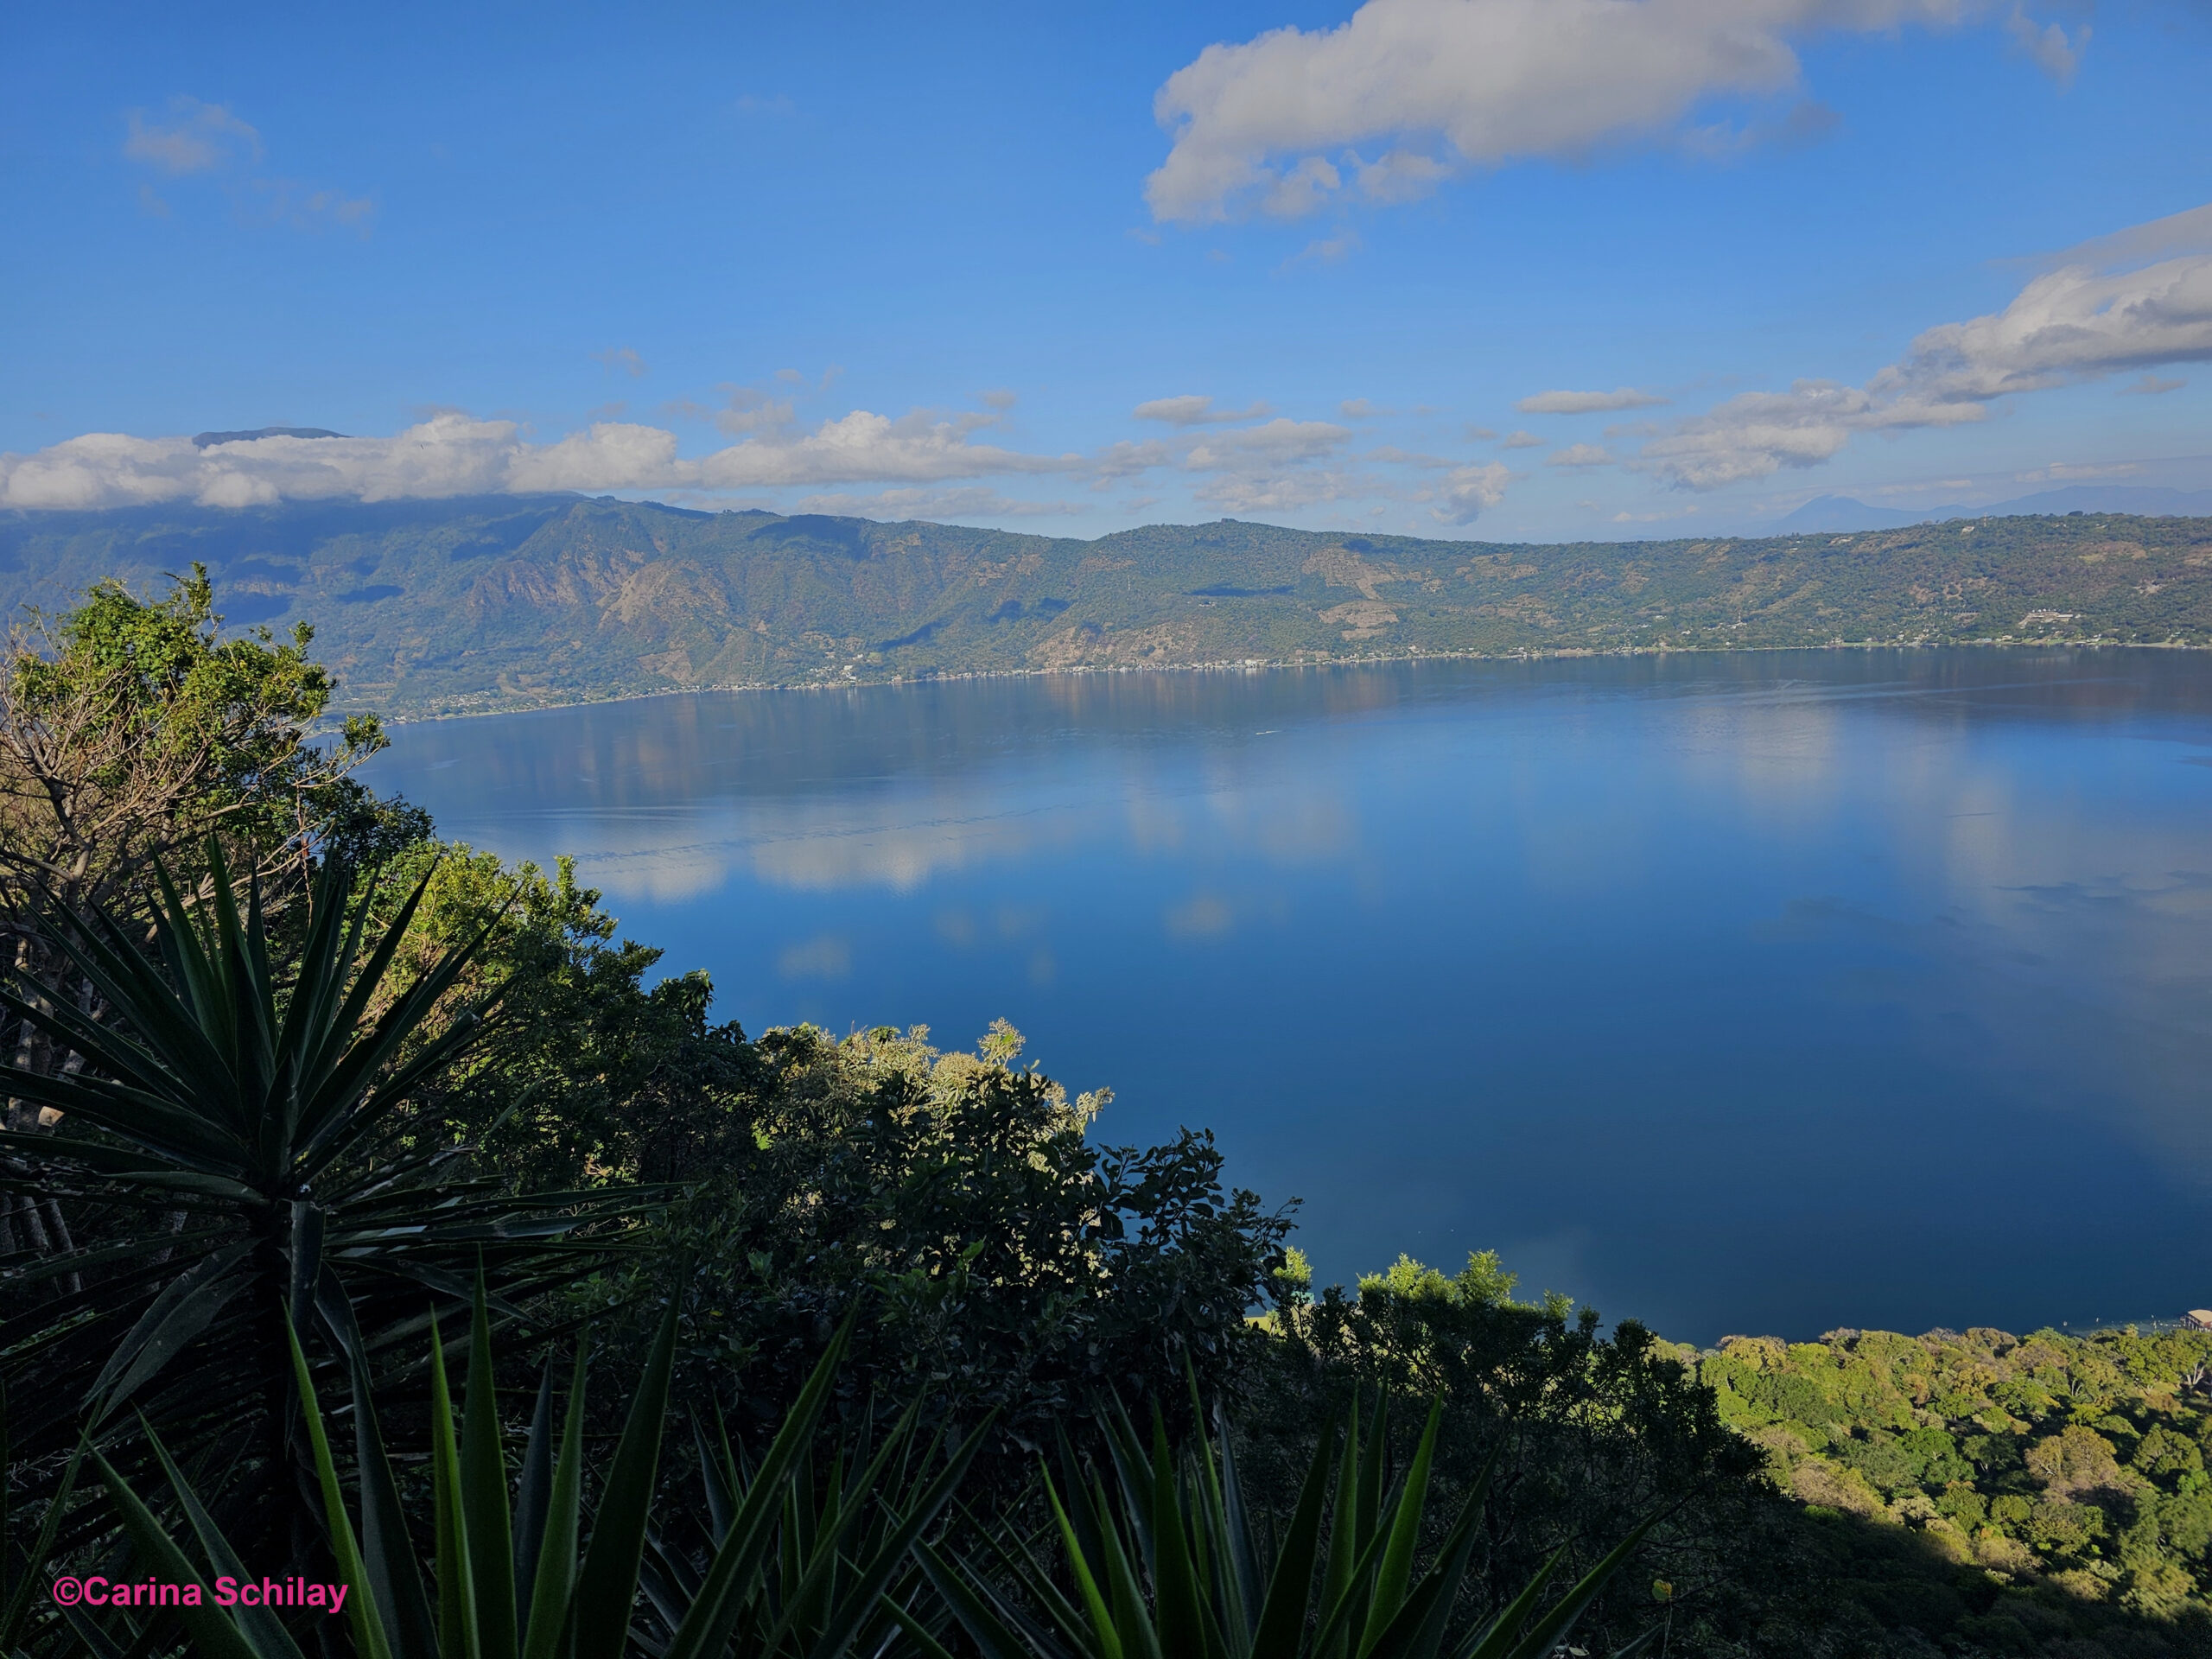 Blick auf die idyllische linke Seite des Lago de Coatepeque in El Salvador, umgeben von üppigem Grün und einem klaren blauen Himmel.